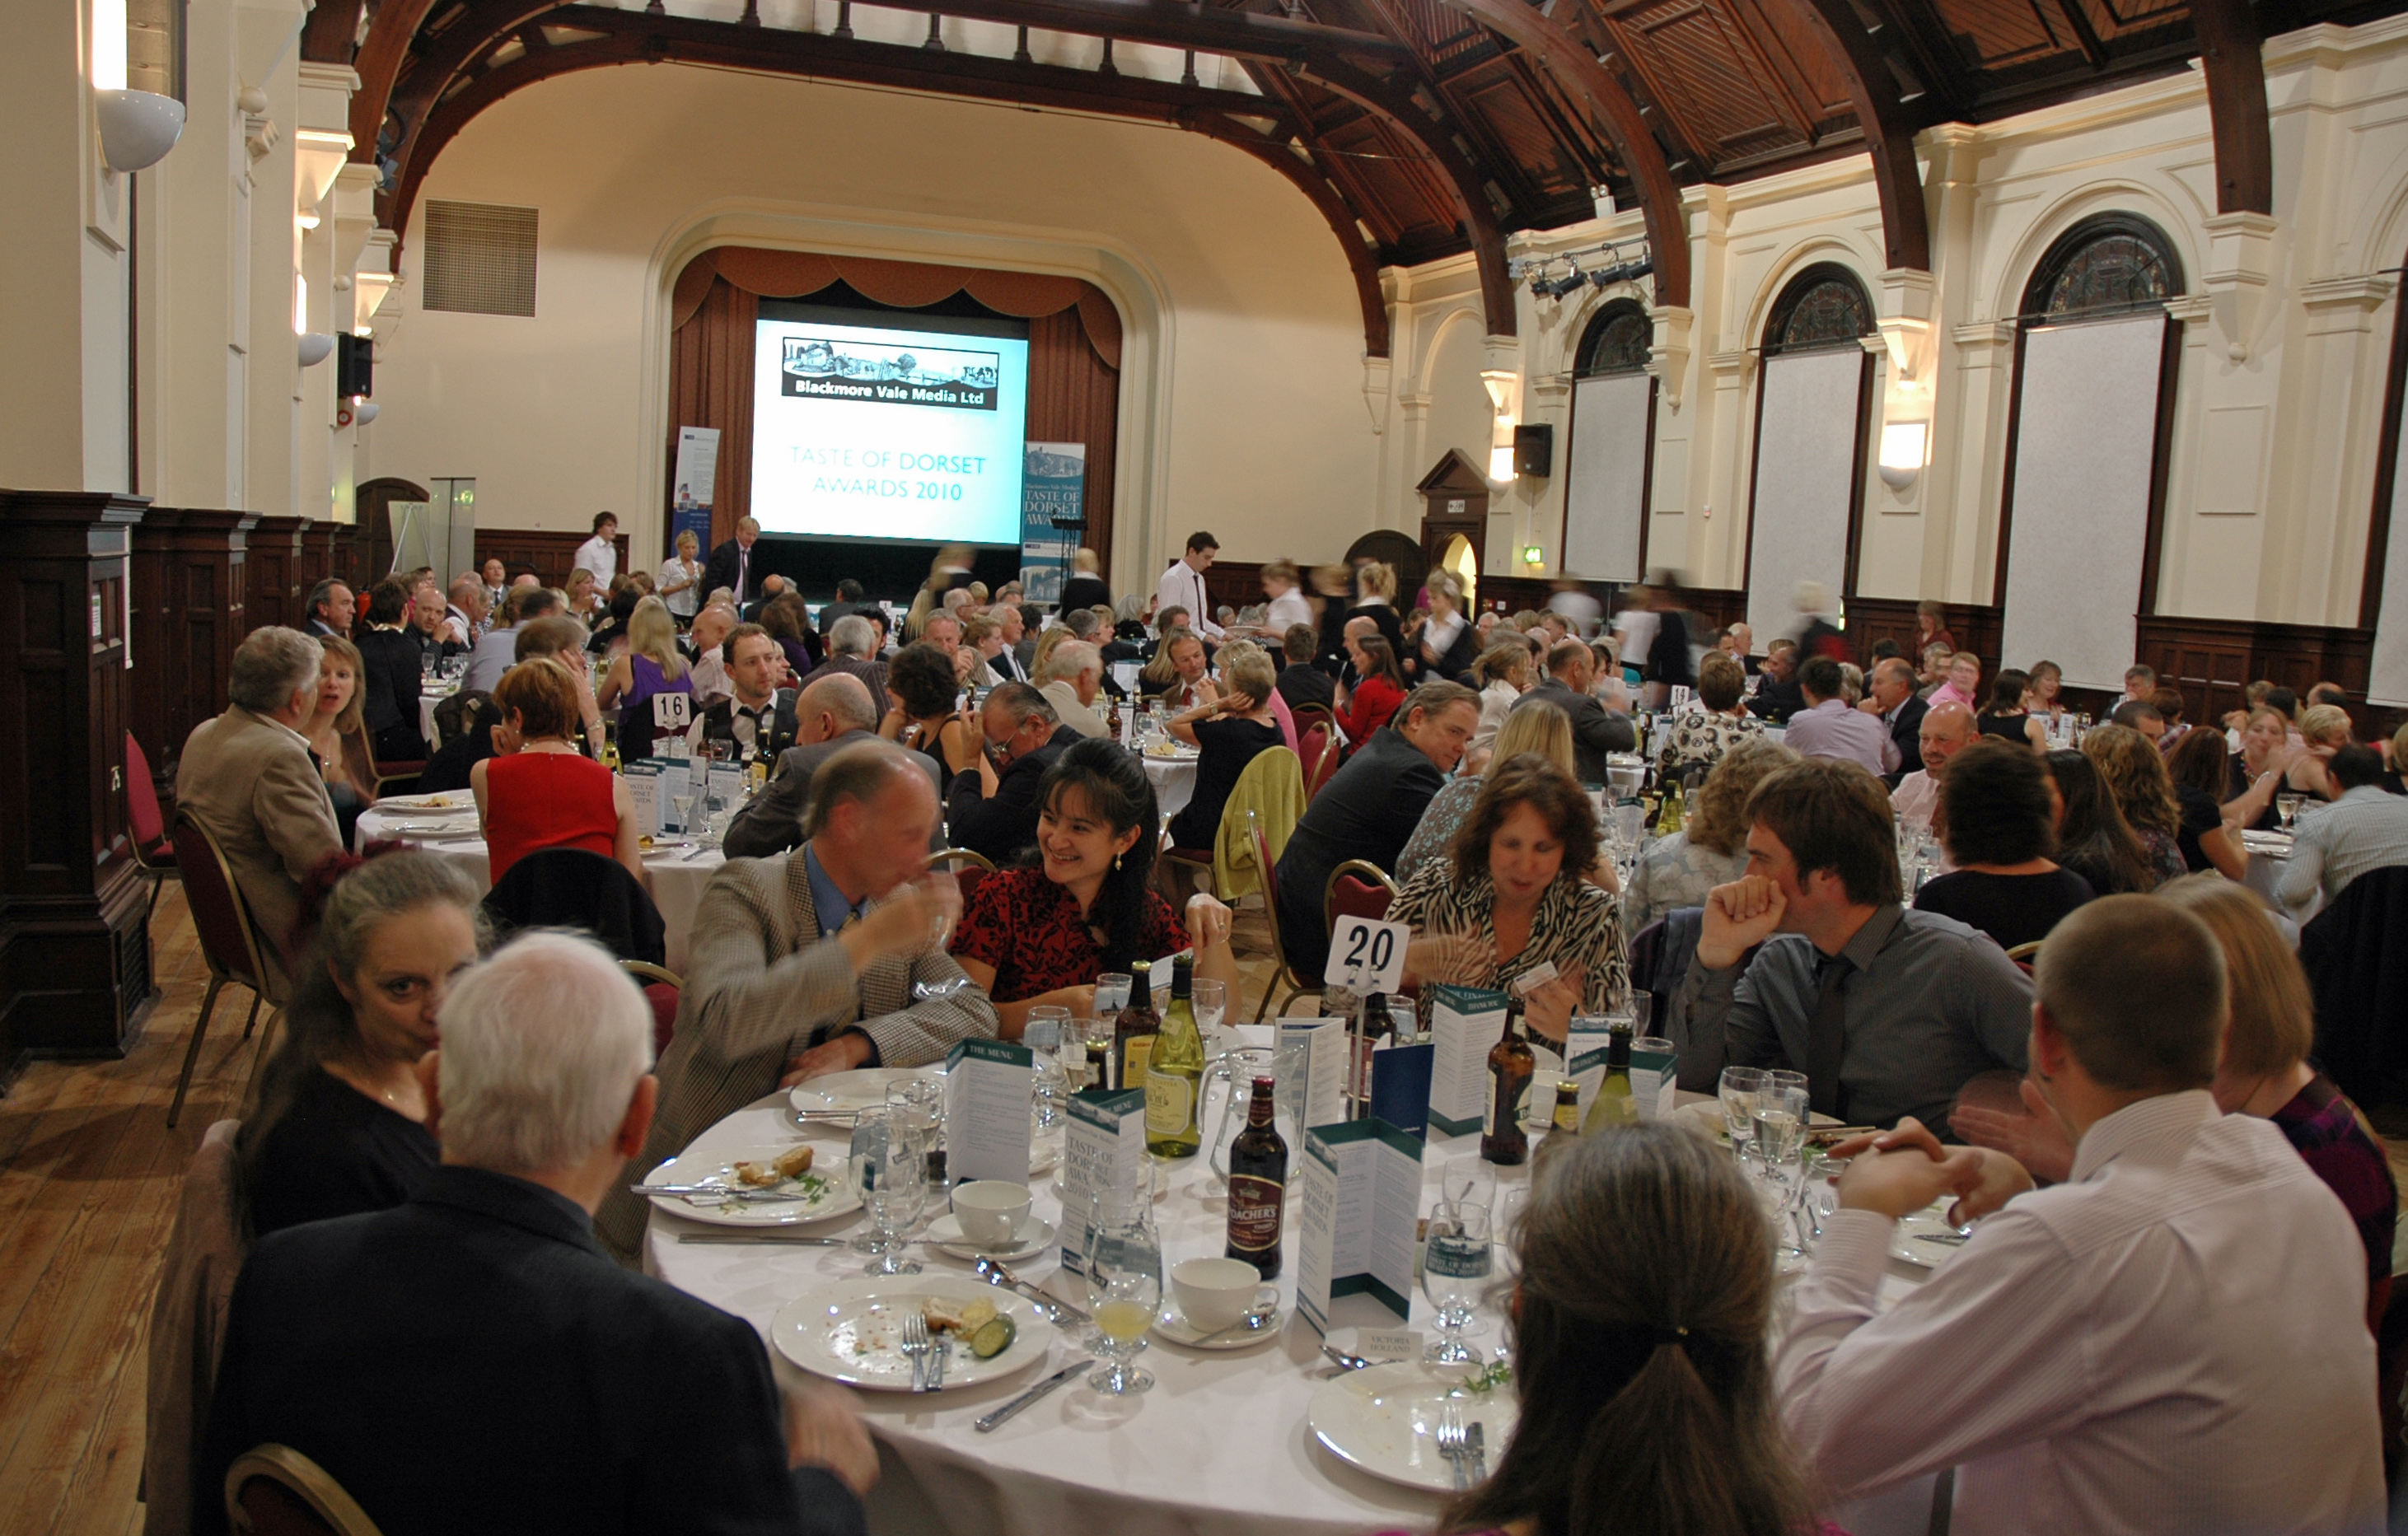 Taste of Dorset Awards & Dinner 016a